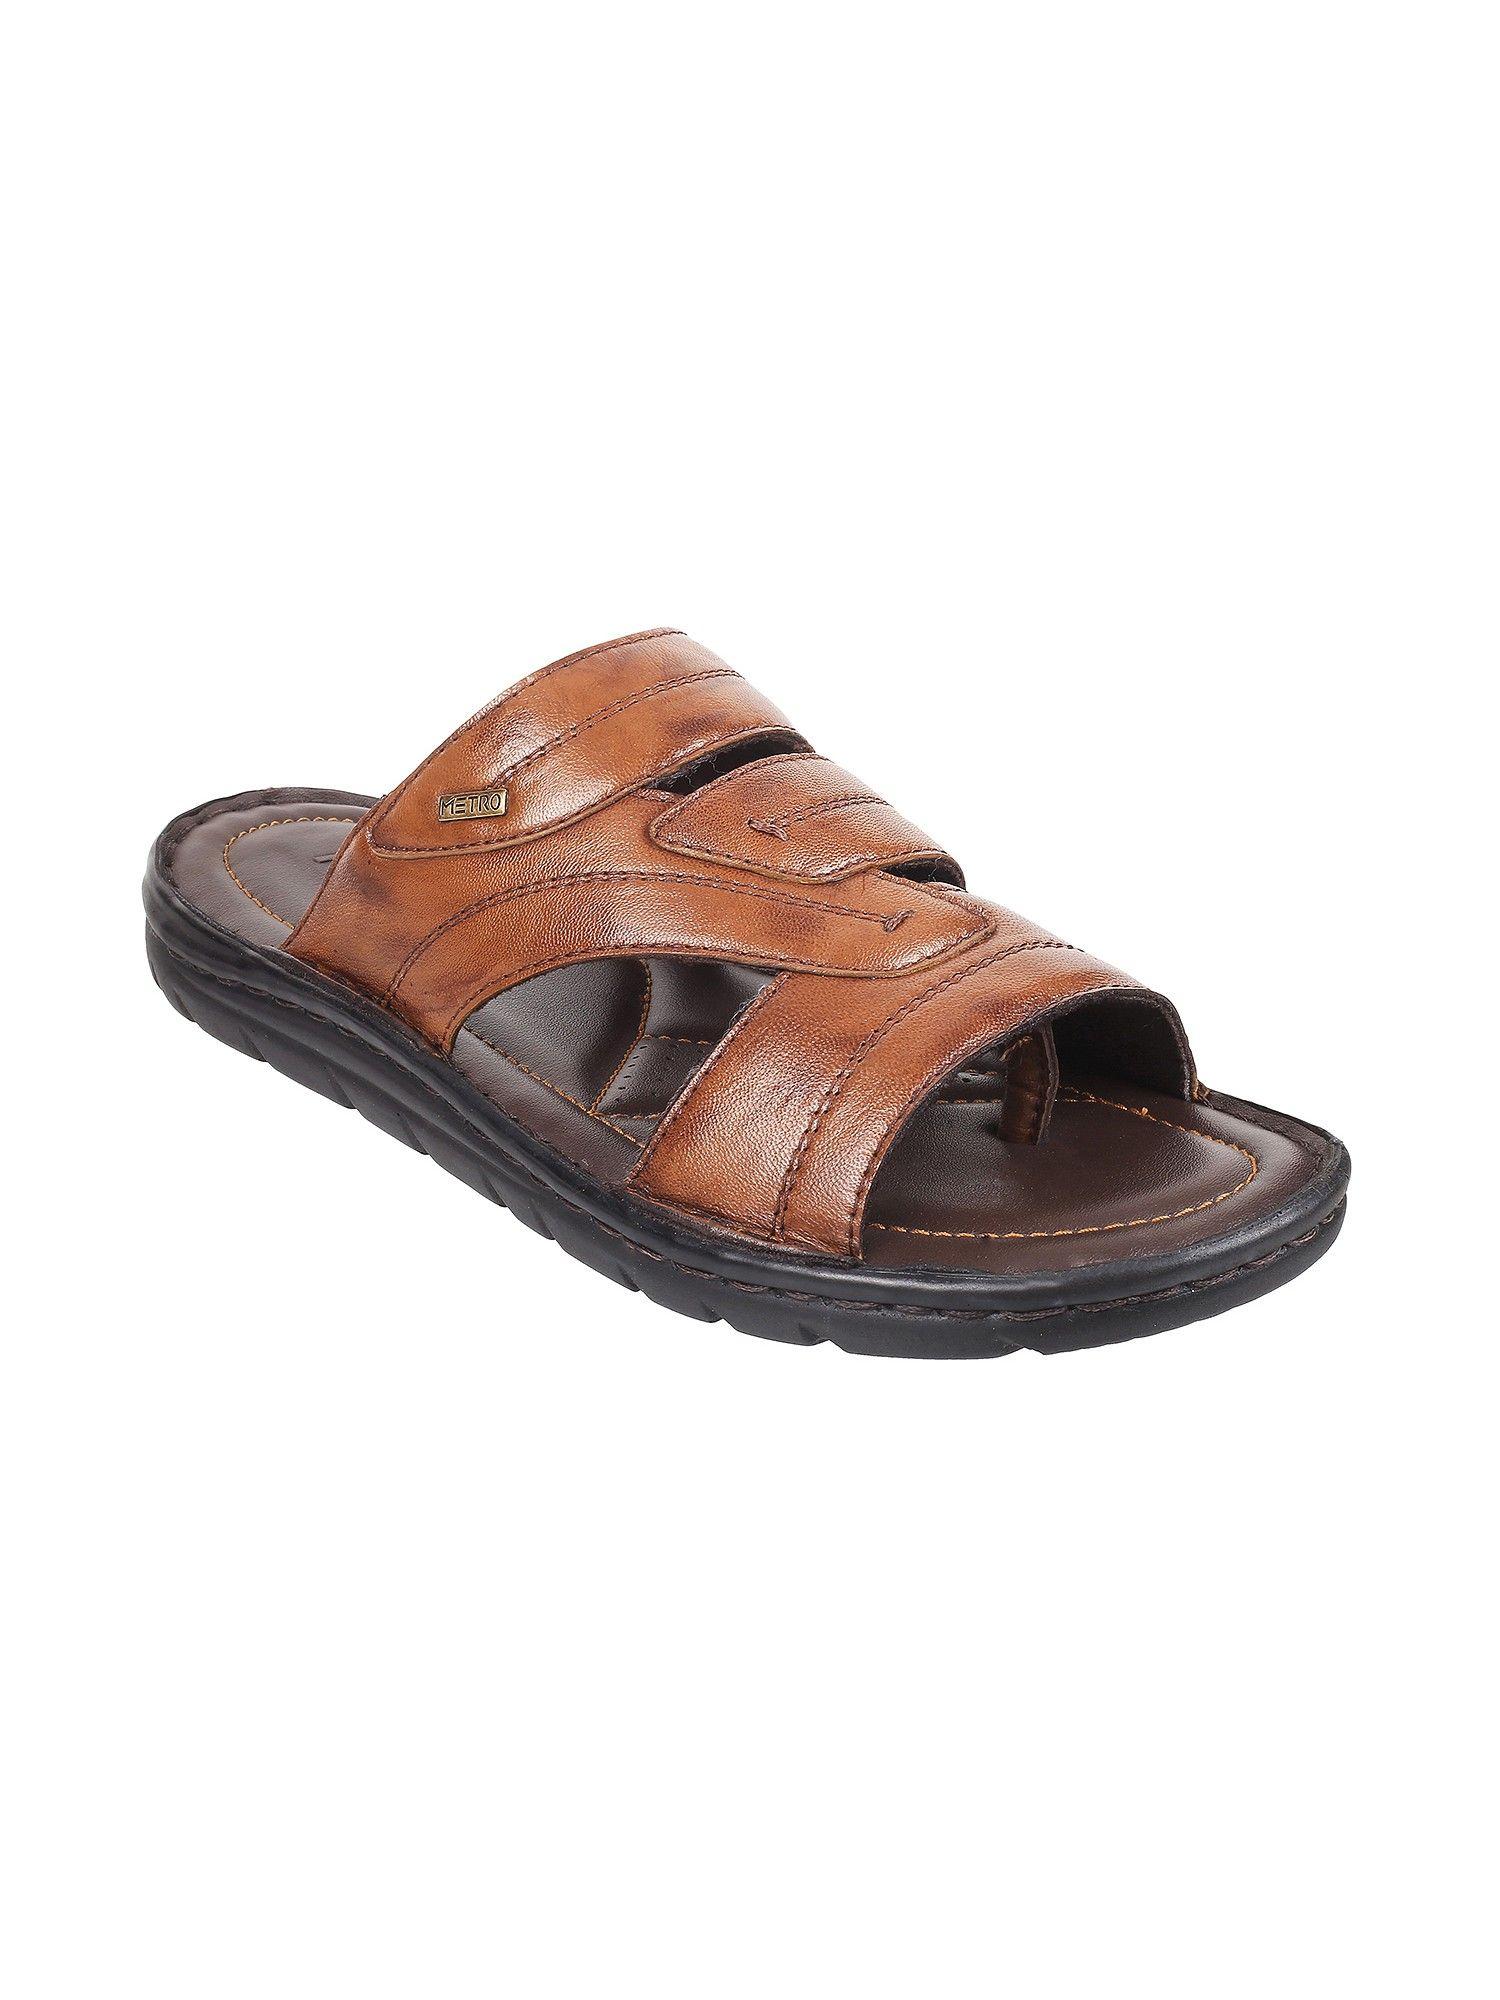 mens-tan-flat-chappalsmetro-mens-tan-leather-solid-plain-sandals